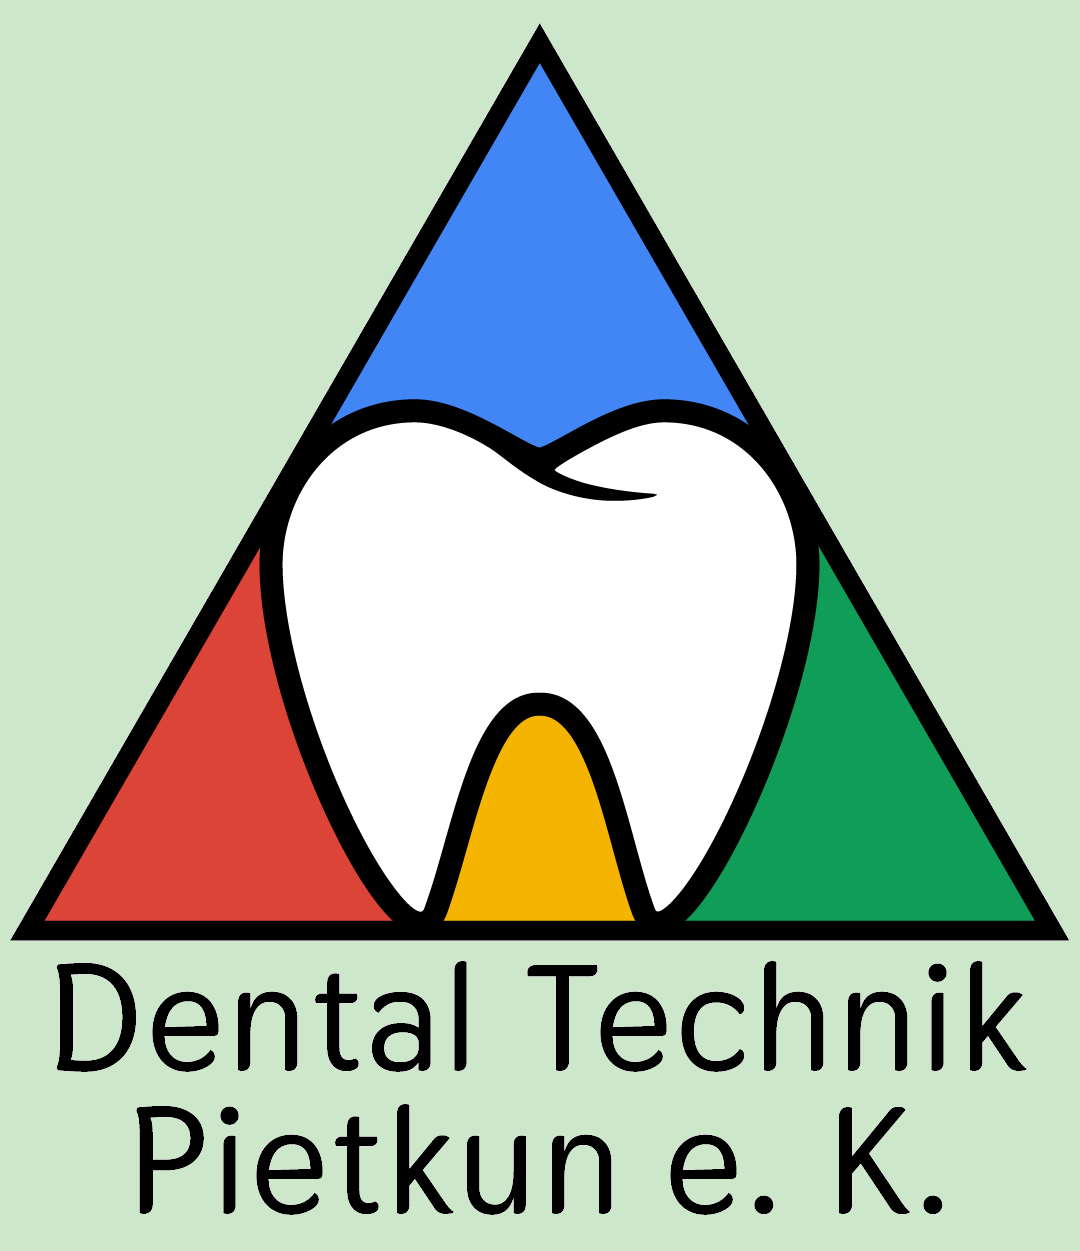 Dental Technik Pietkun e. K.